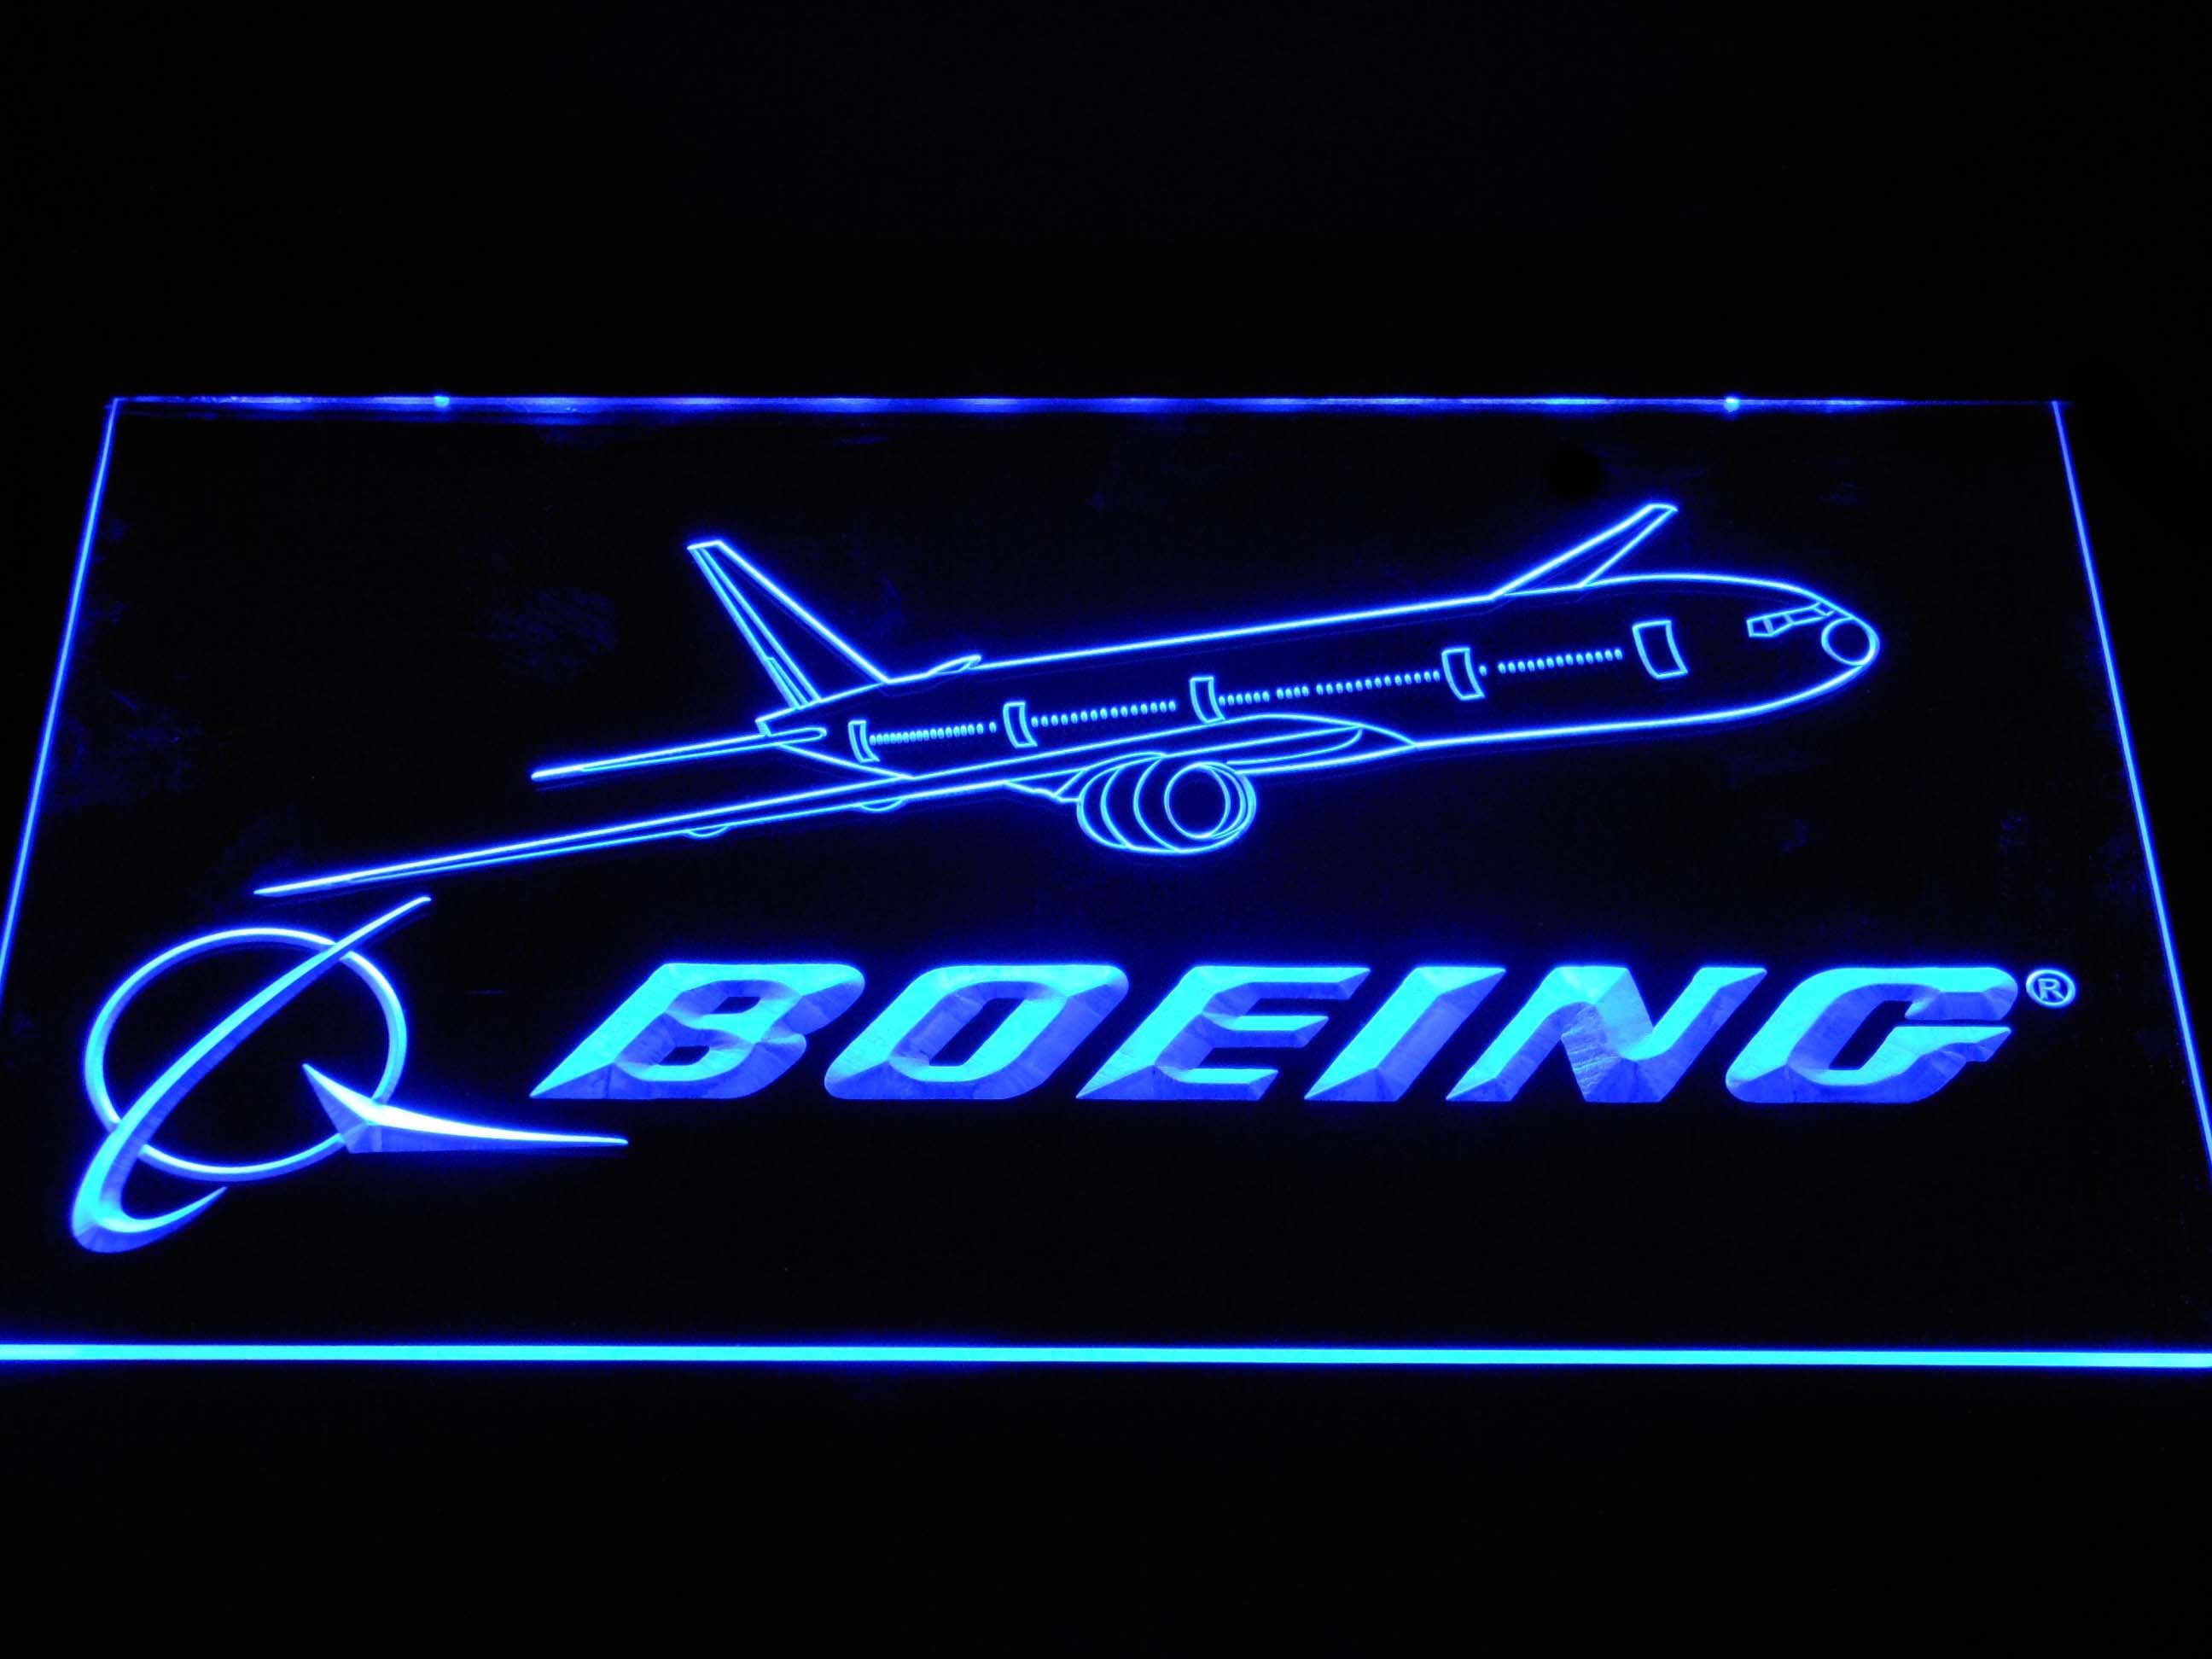 Boeing LED Neon Sign   Neon Light LED Sign